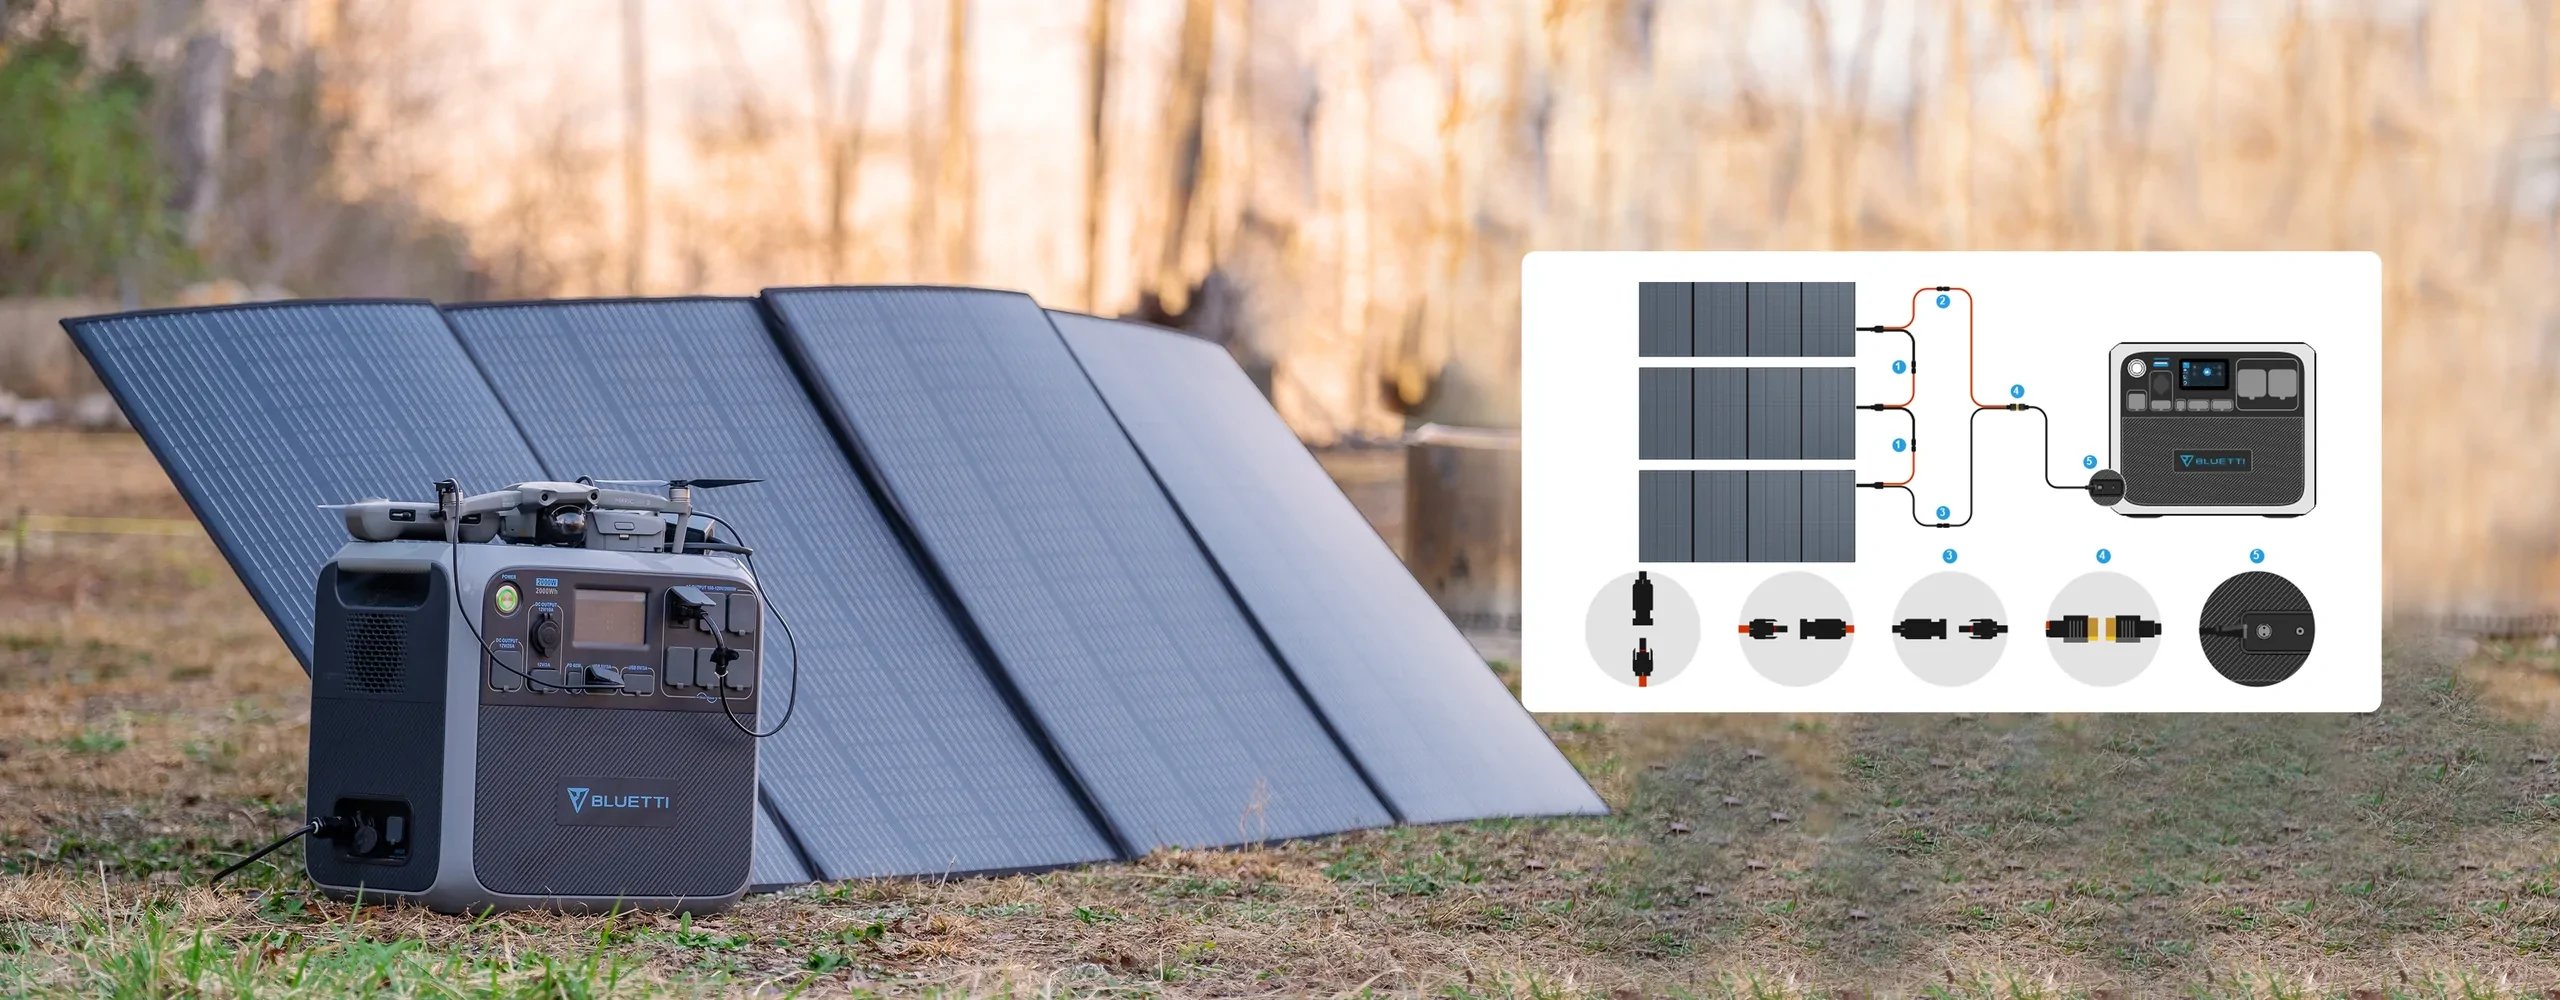 Panneau solaire 350W compatible batterie de secours Bluetti.